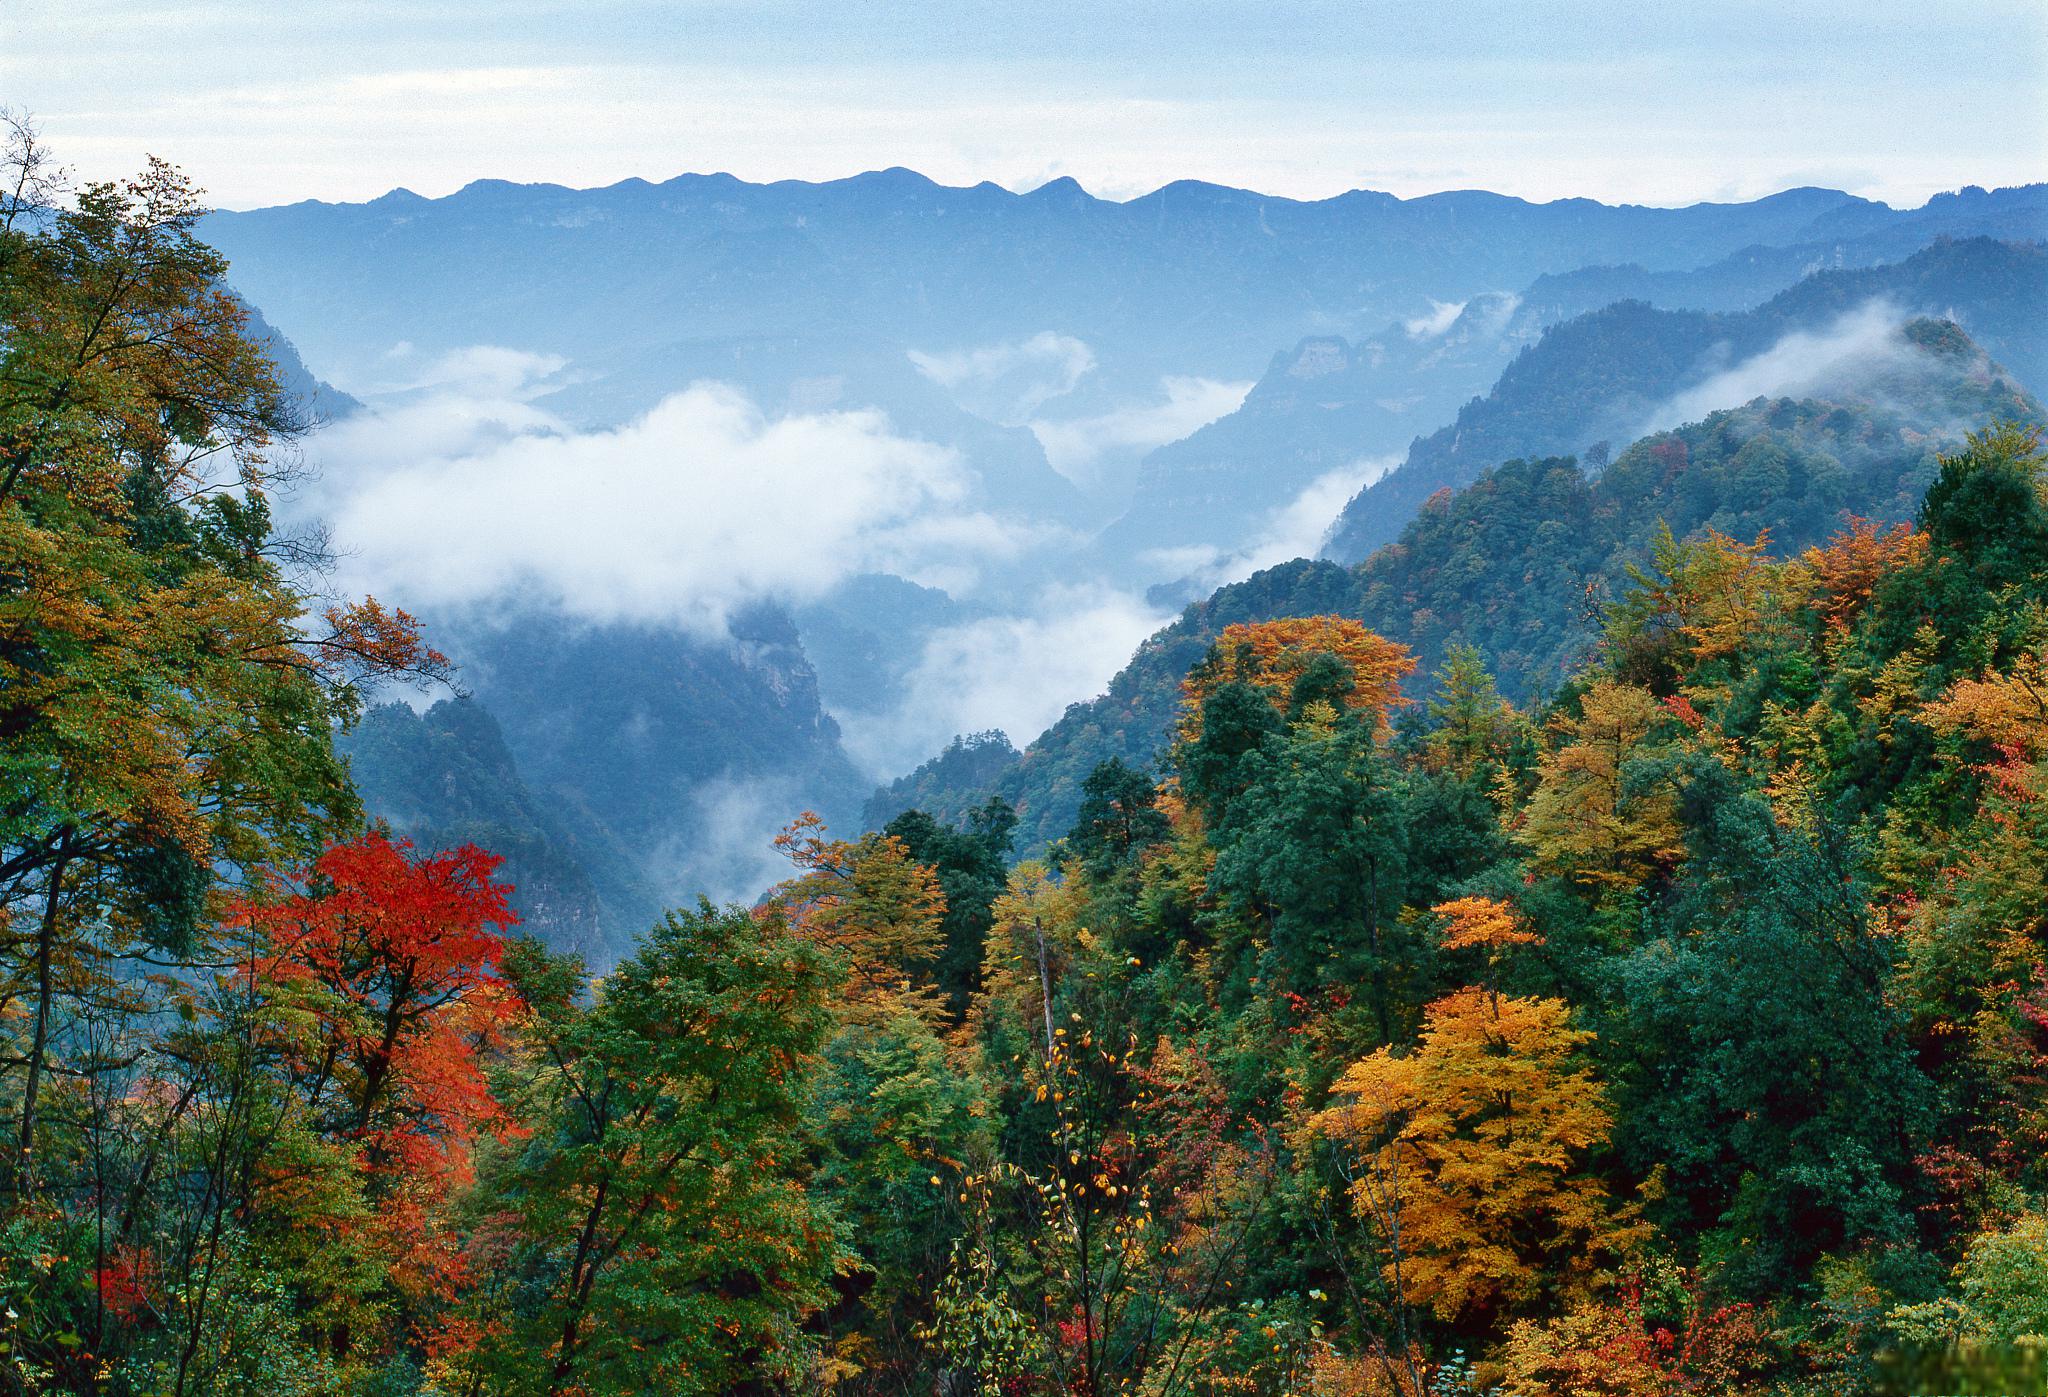 四川光雾山:5a景区 光雾山位于四川省巴中市南江县北部,是川陕两省的